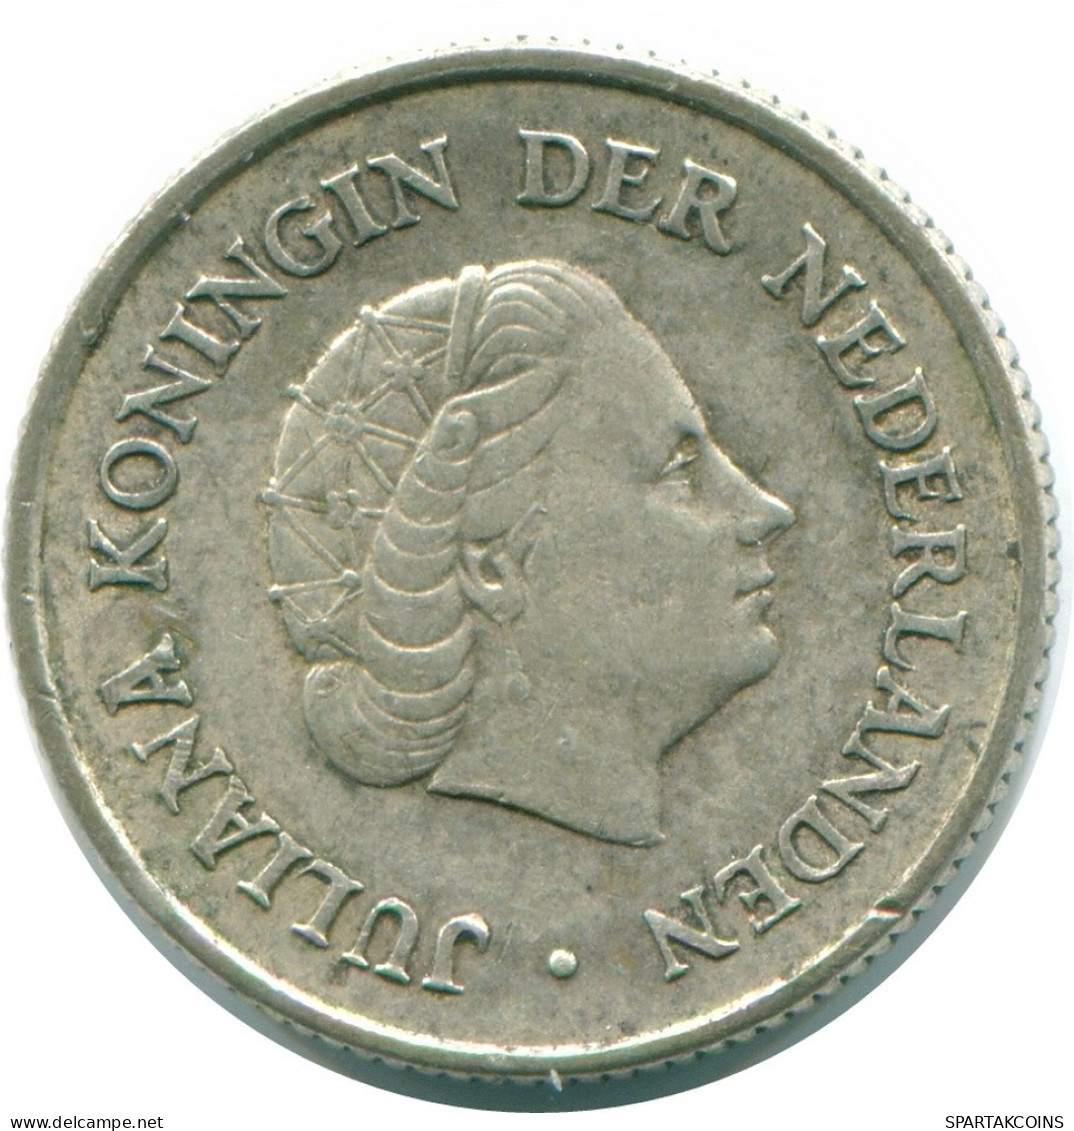 1/4 GULDEN 1965 NIEDERLÄNDISCHE ANTILLEN SILBER Koloniale Münze #NL11326.4.D.A - Antillas Neerlandesas